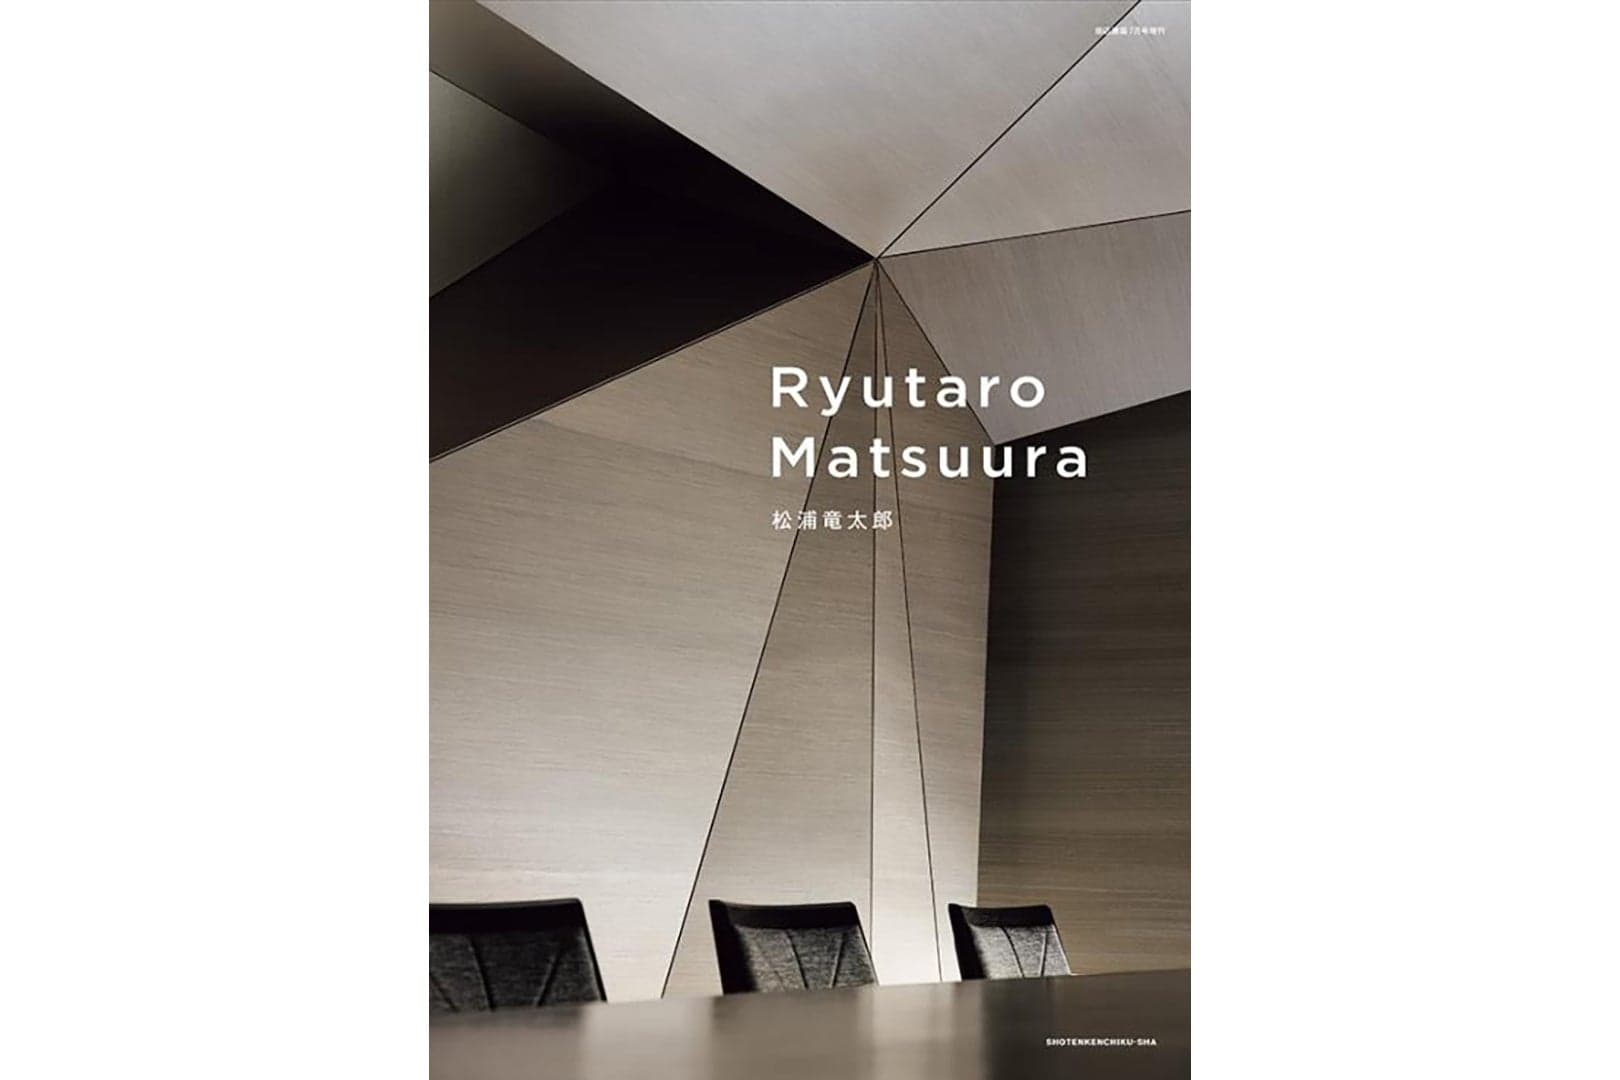 商店建築2022年7月号増刊『Ryutaro Matsuura』に当社RENSデザイナー松浦竜太郎が特集されました